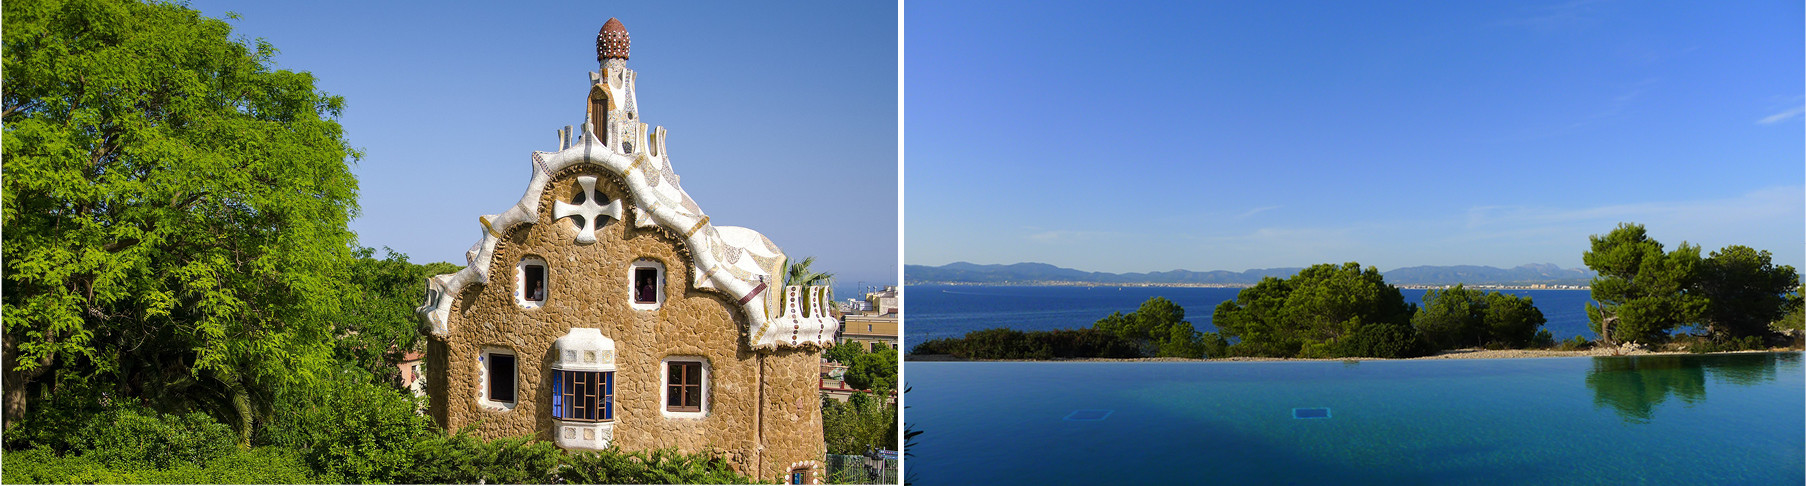 Image-Barcelona-Architecture-Mallorca-Coastline